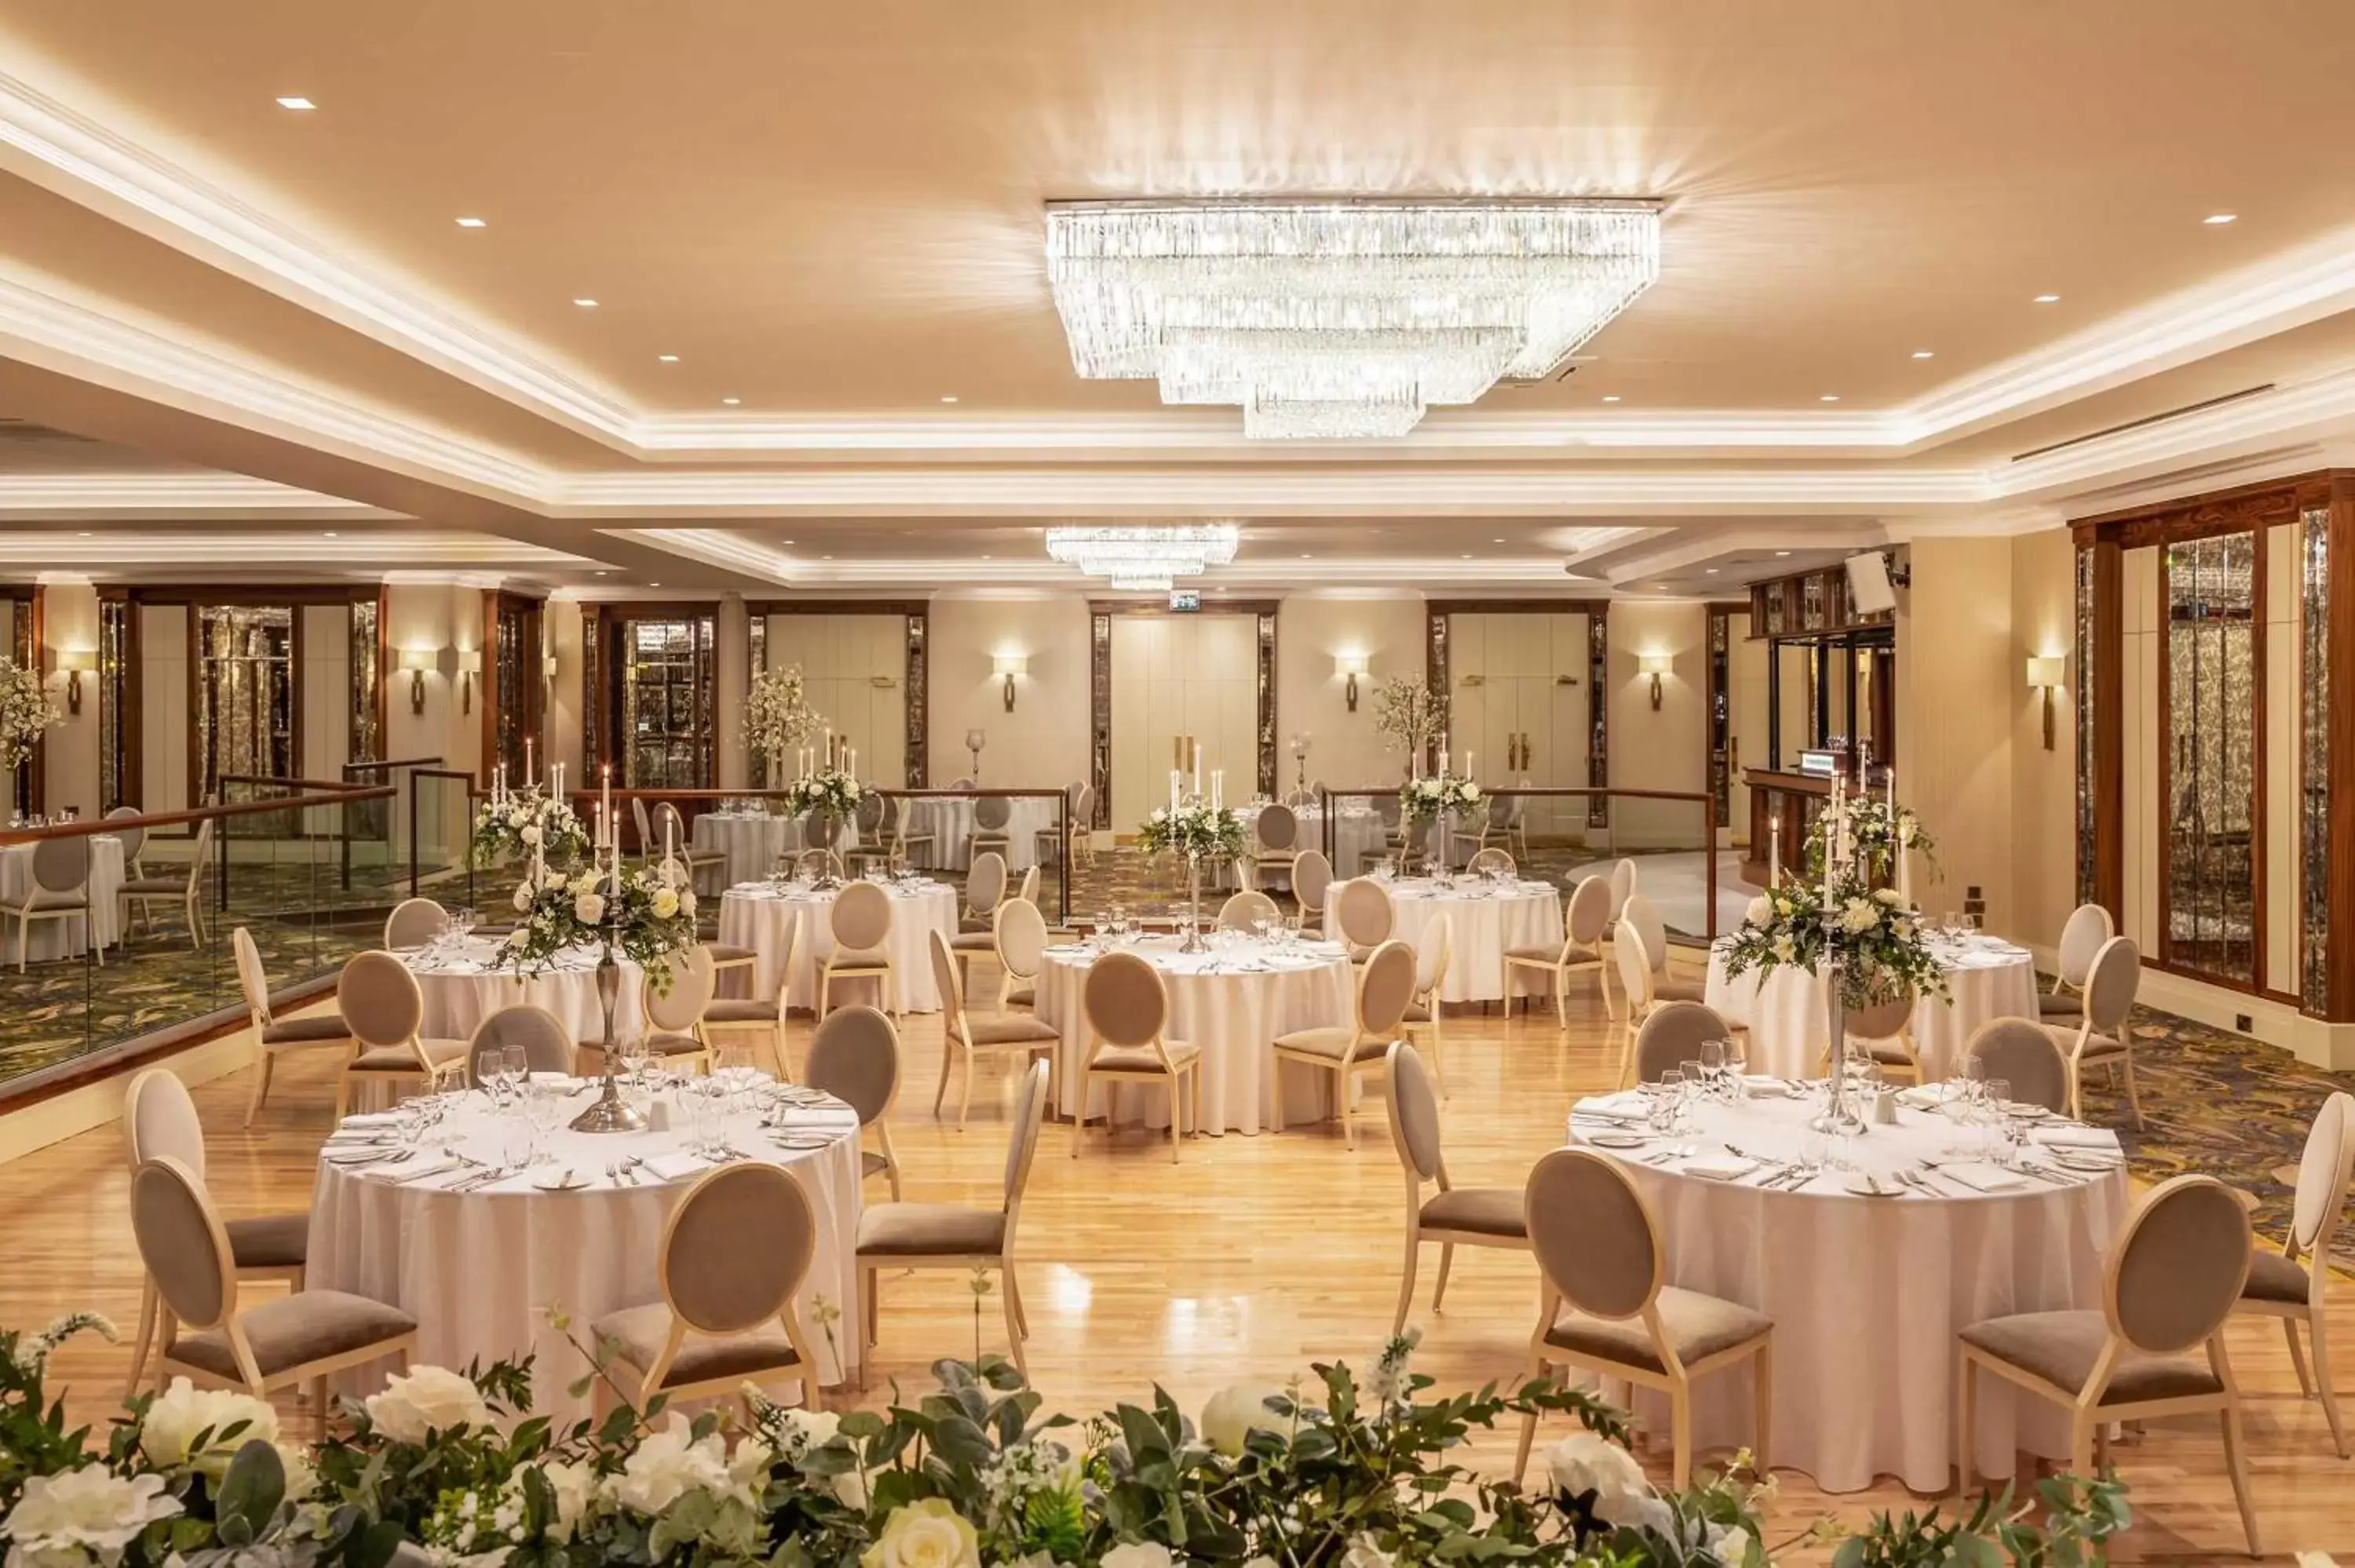 Banquet/Function facilities, Banquet Facilities in Hotel Kilmore